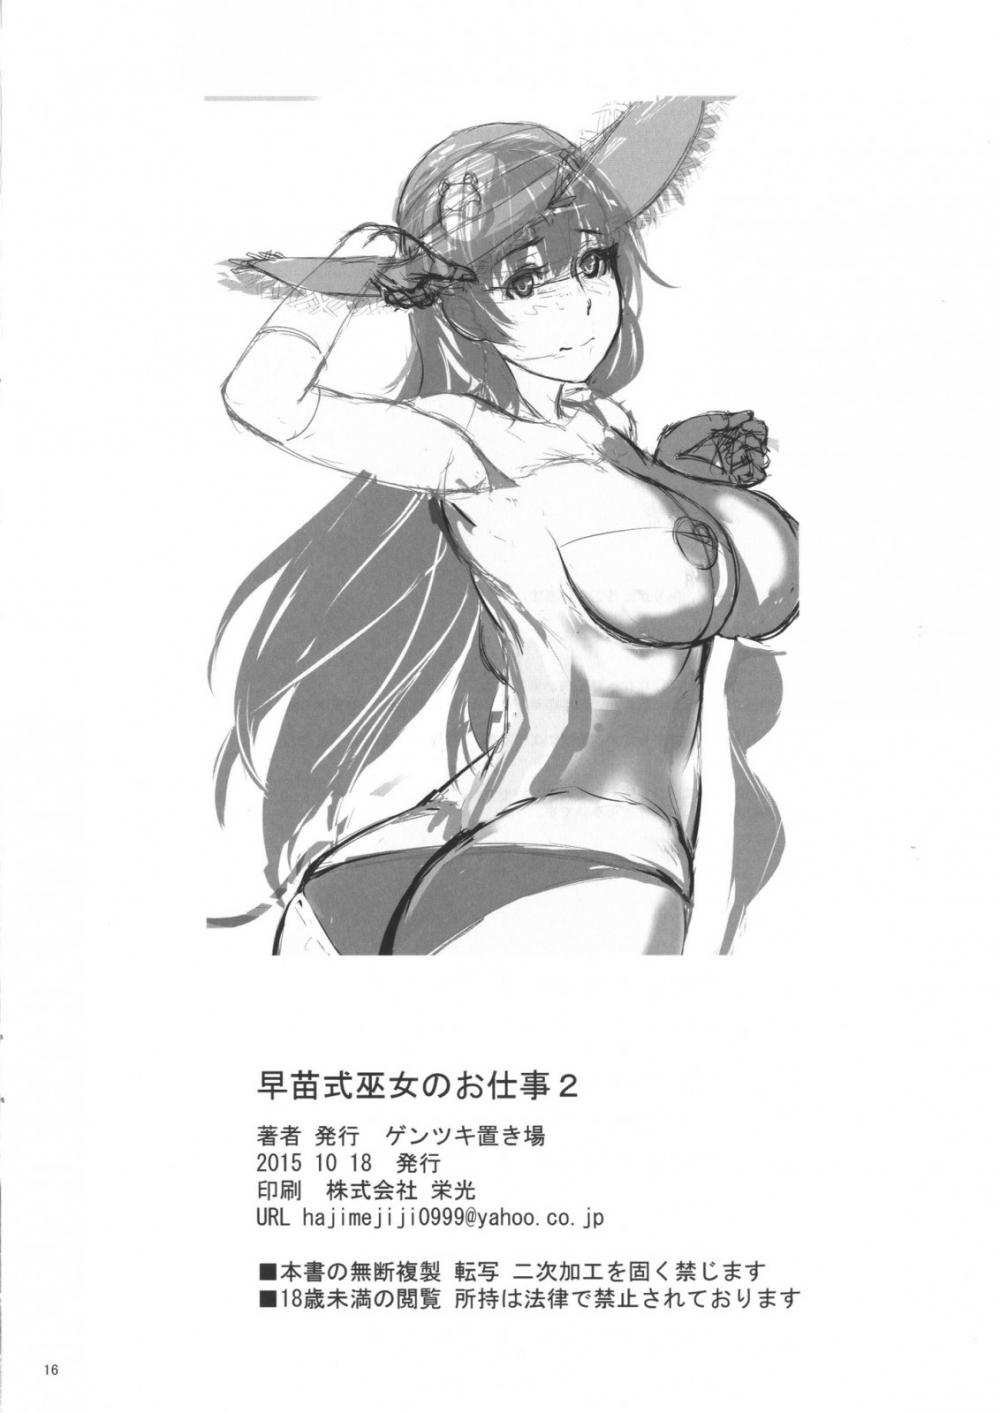 Hentai Manga Comic-Sanae-shiki Miko no Oshigoto 2-Read-16